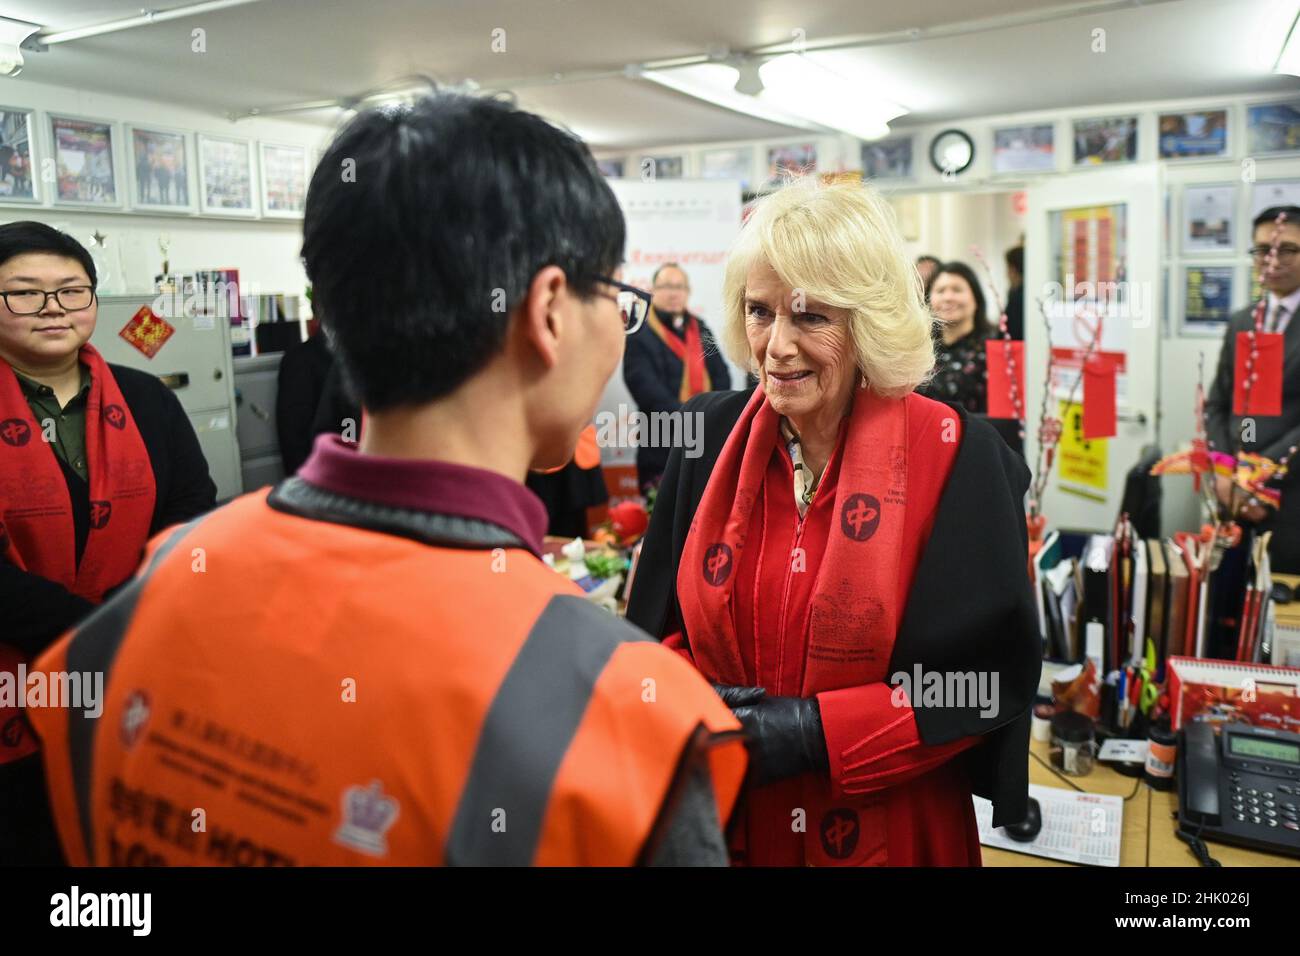 Die Herzogin von Cornwall trifft sich mit Freiwilligen des chinesischen Informations- und Beratungszentrums während eines Besuchs des Prinzen von Wales in Chinatown, London, um das Mondneujahr zu feiern. Bilddatum: Dienstag, 1. Februar 2022. Stockfoto